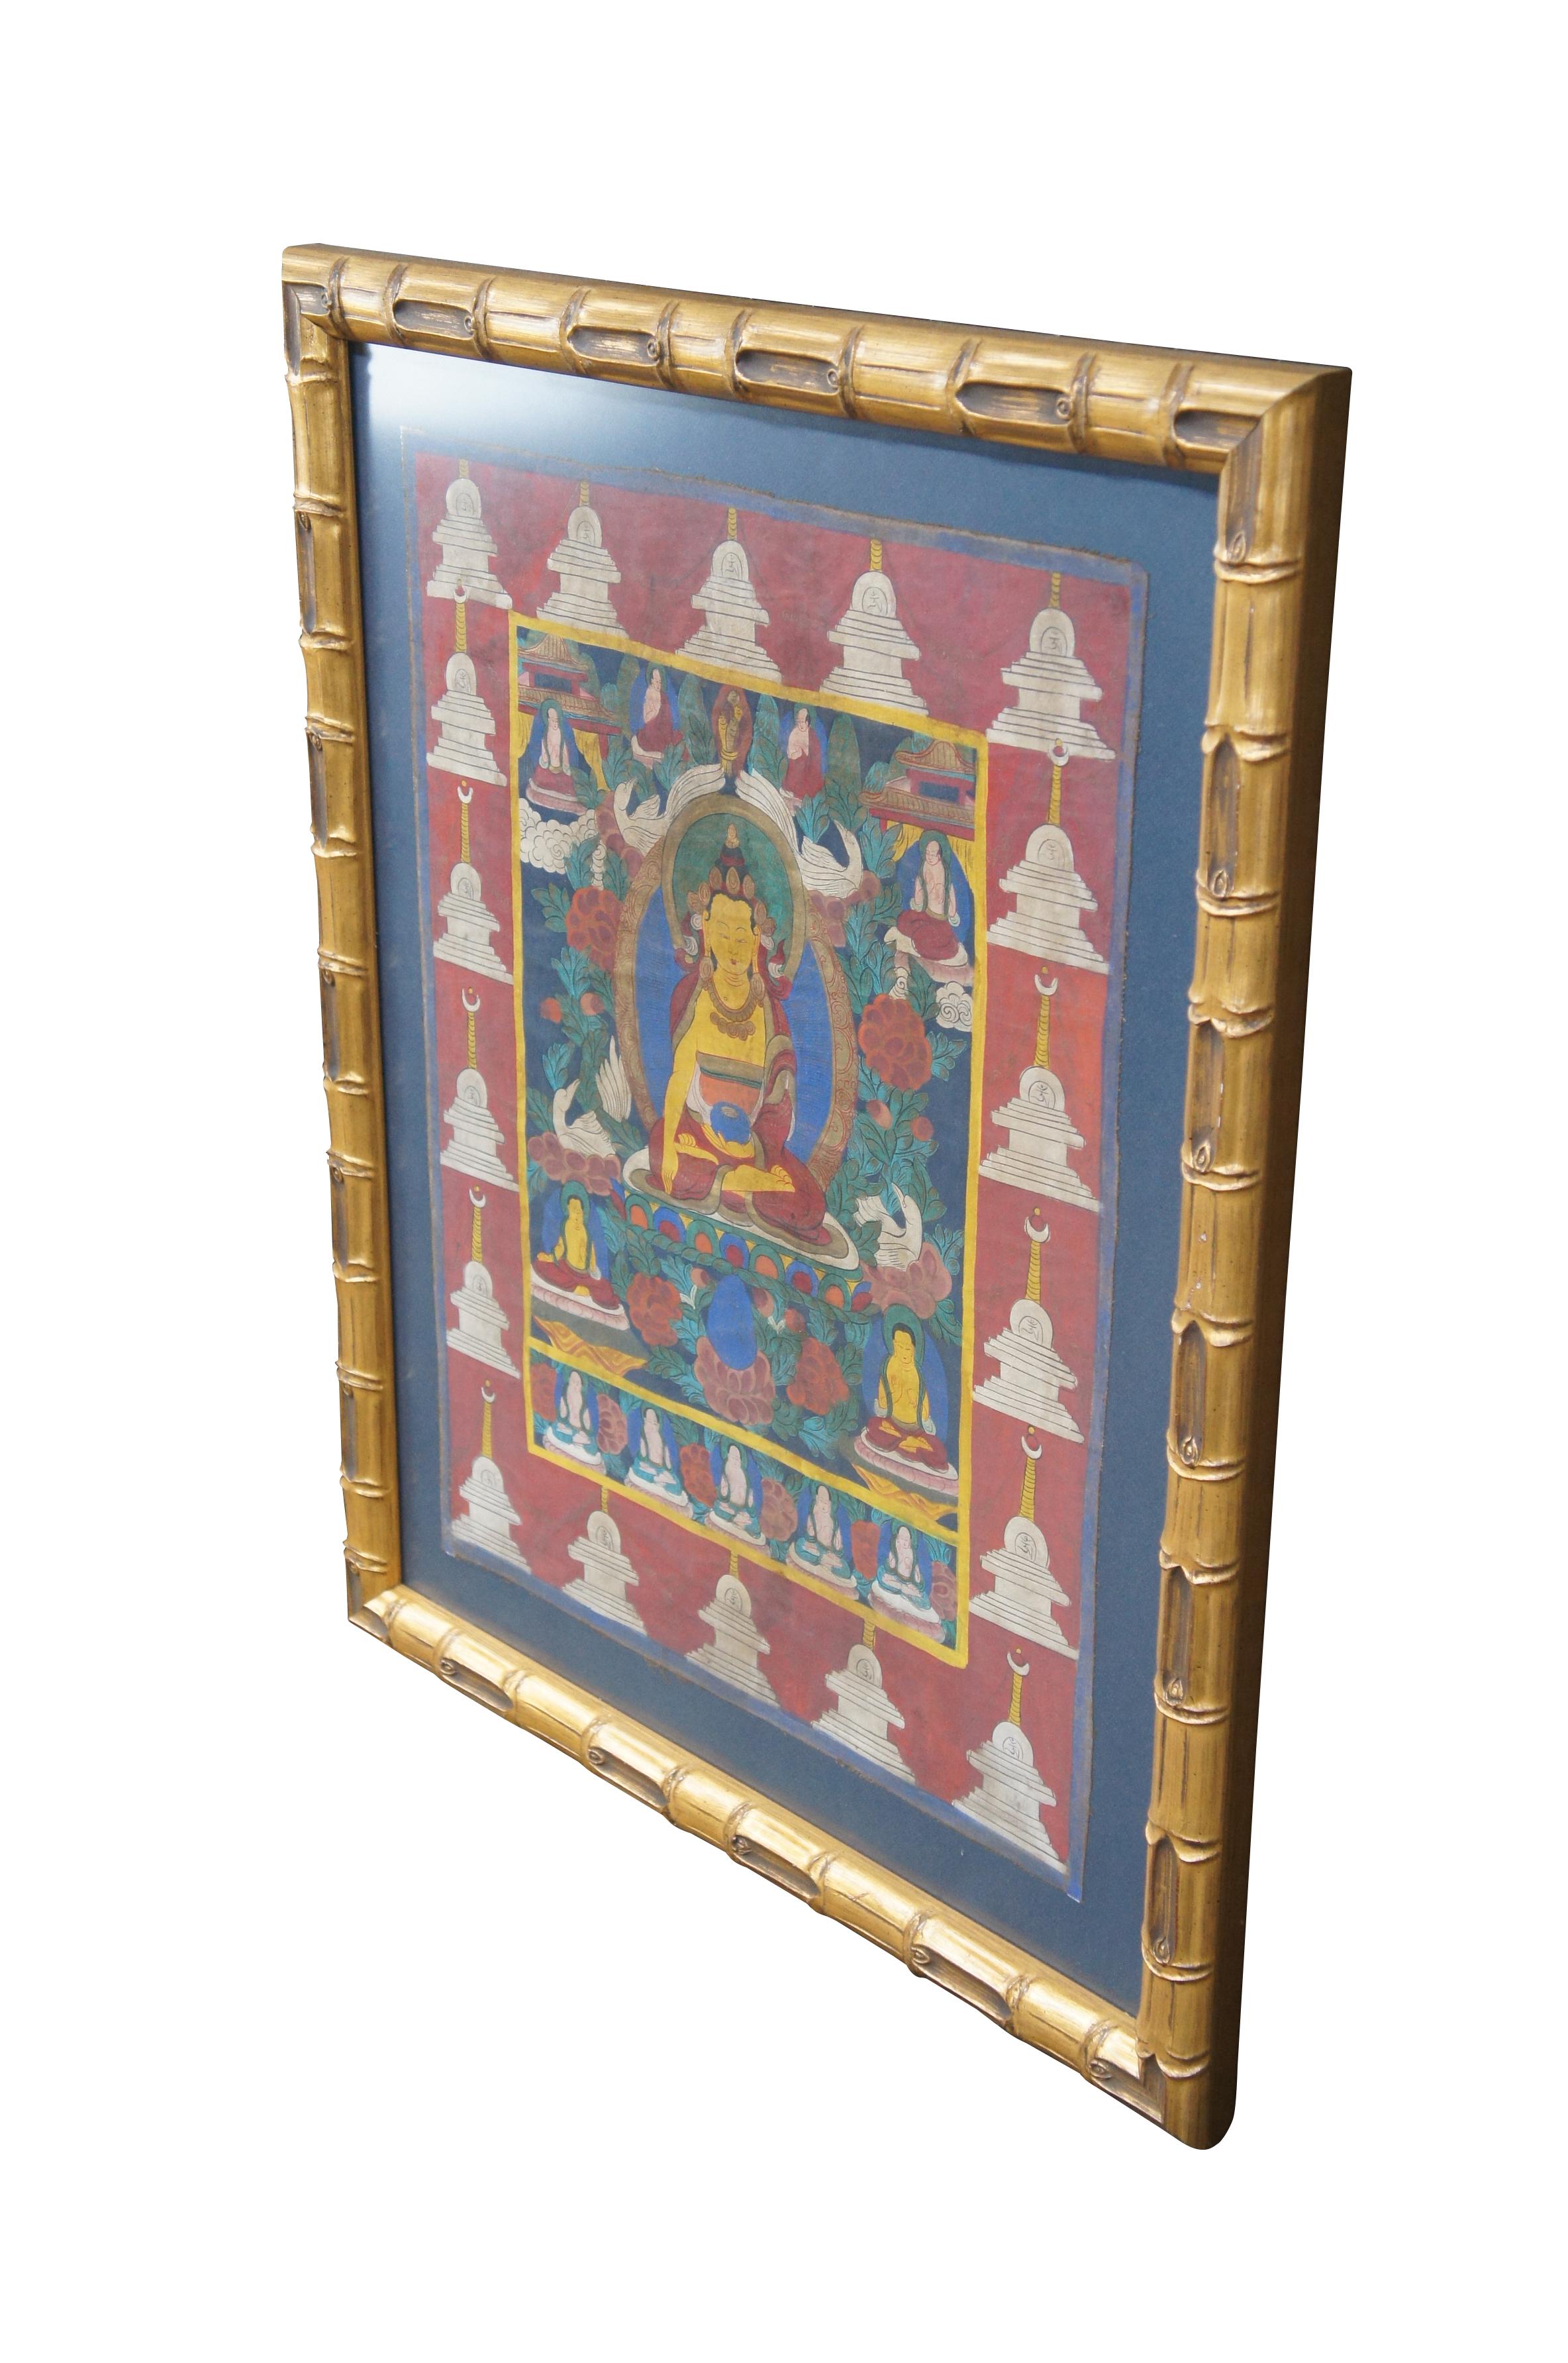 Handgemalte tibetische Thangka aus der letzten Hälfte des 20. Jahrhunderts.  Mit einem zentralen Buddha, umgeben von Blättern, Blumen, Singschwänen und kleineren Buddha-Figuren.  Die Umrandung ist umrahmt von  Stupa's (Pagoden).  Gerahmt in Holz mit